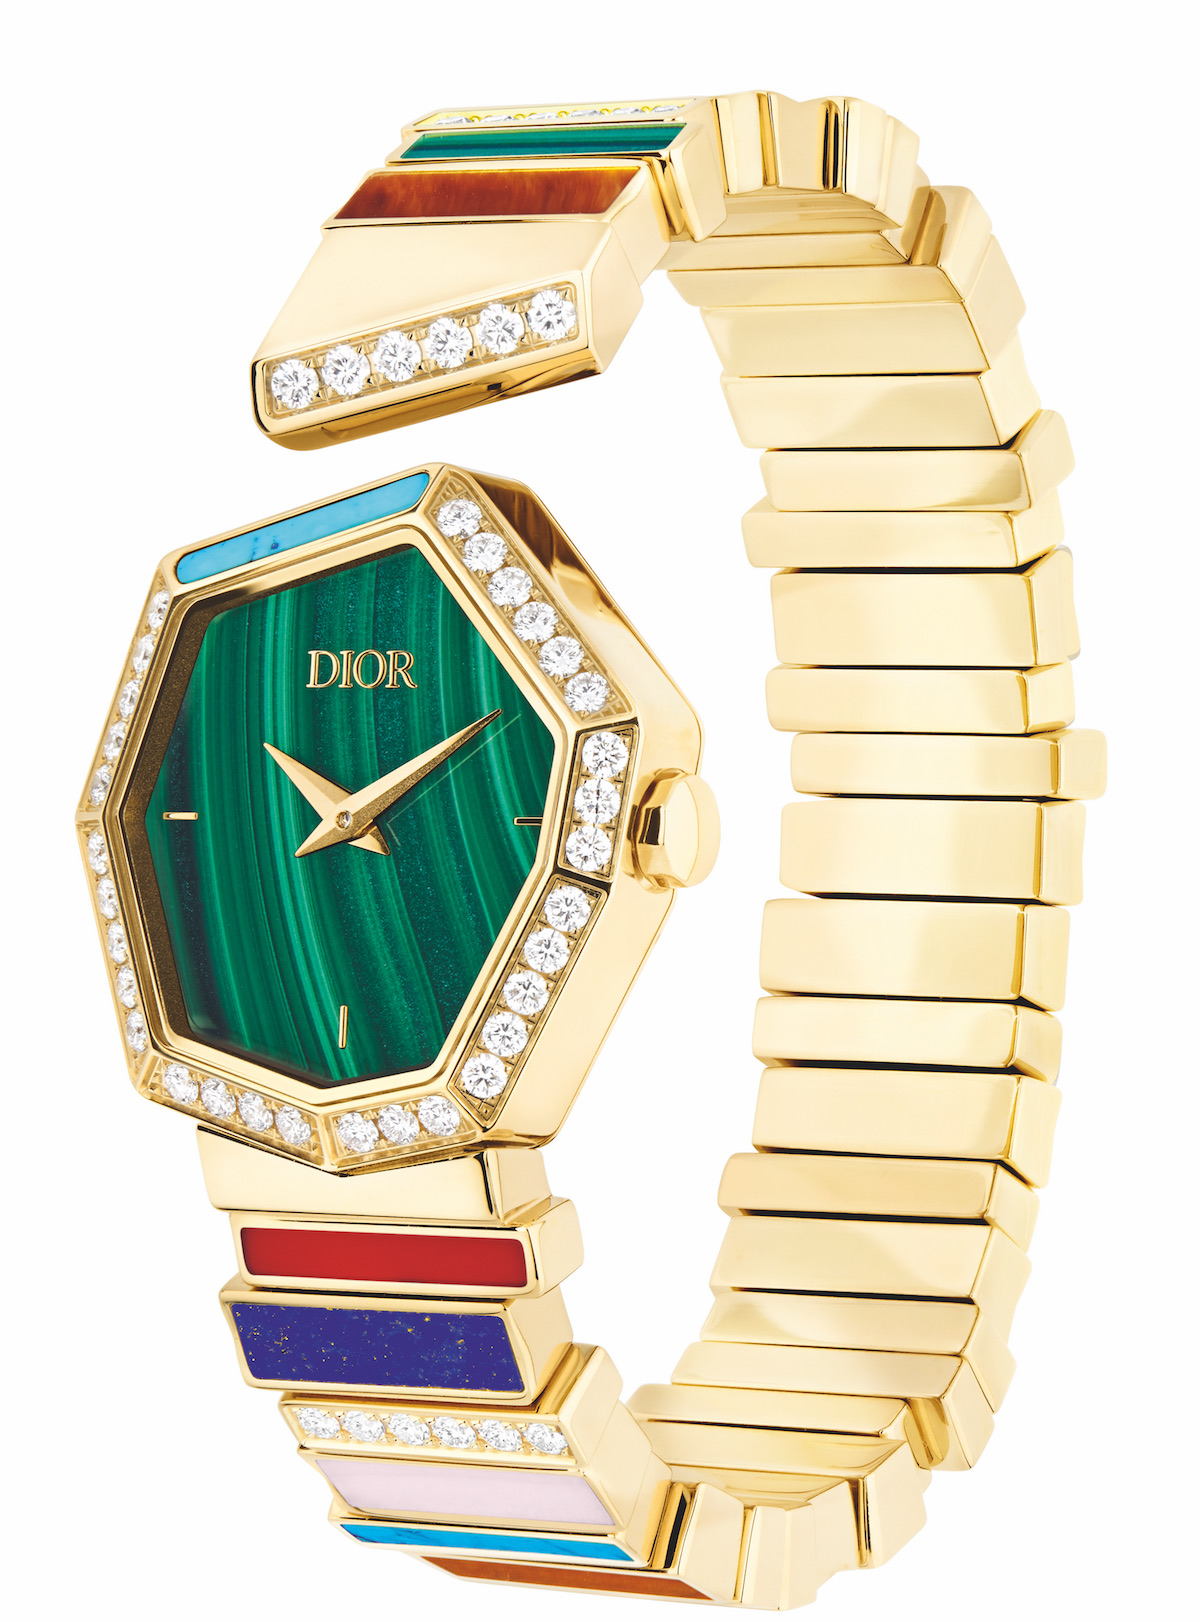 Dior Gem Dior watch